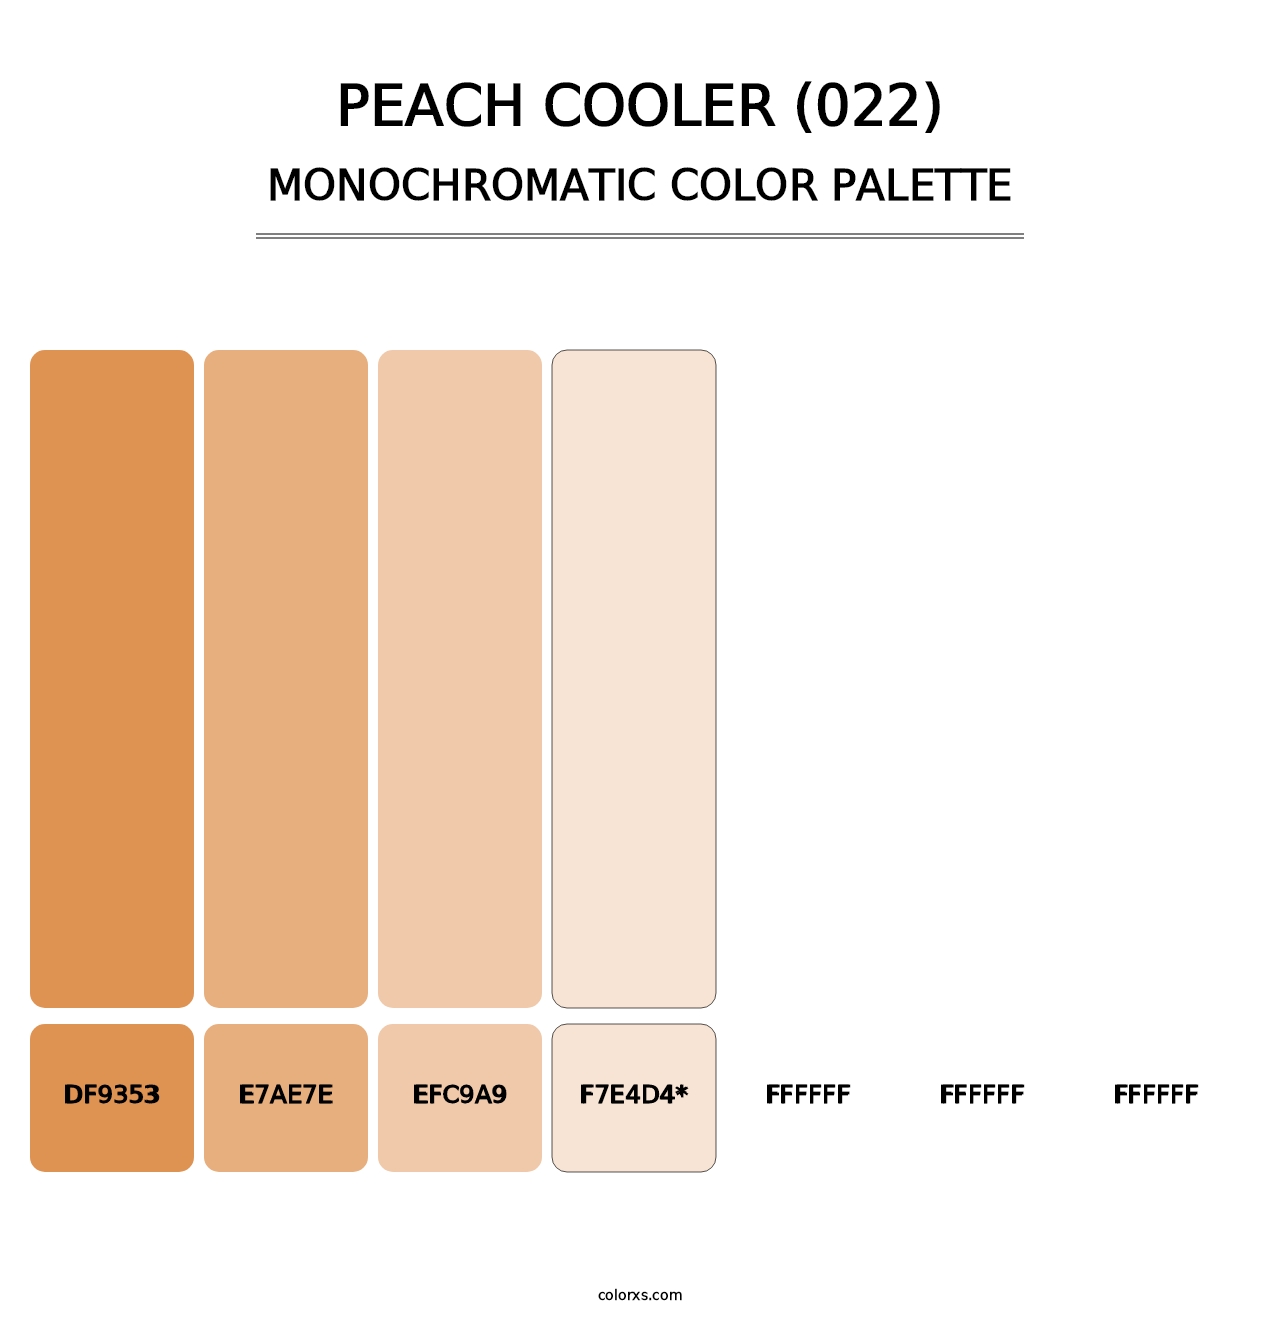 Peach Cooler (022) - Monochromatic Color Palette